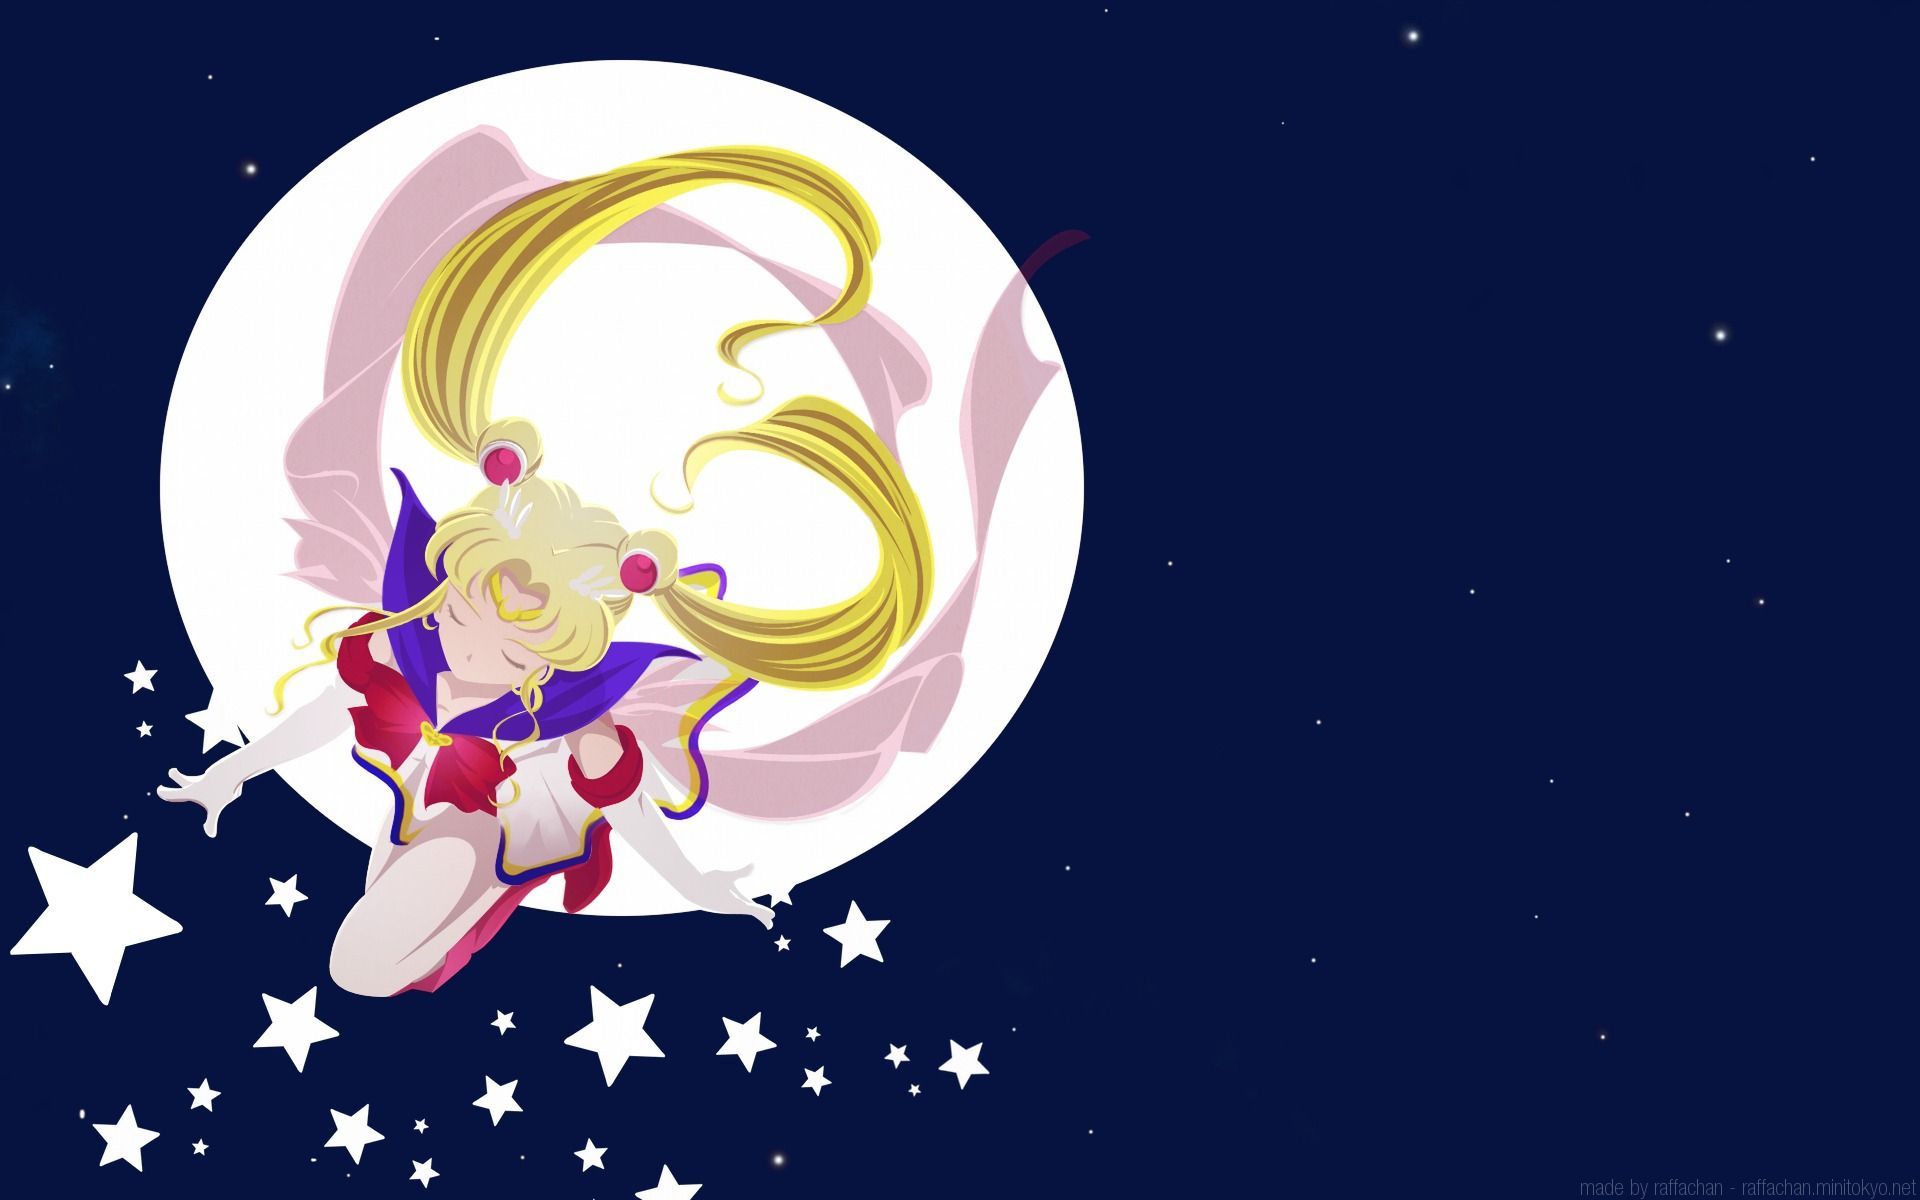 Sailor Moon Minimalist Wallpaper Free Sailor Moon Minimalist Background